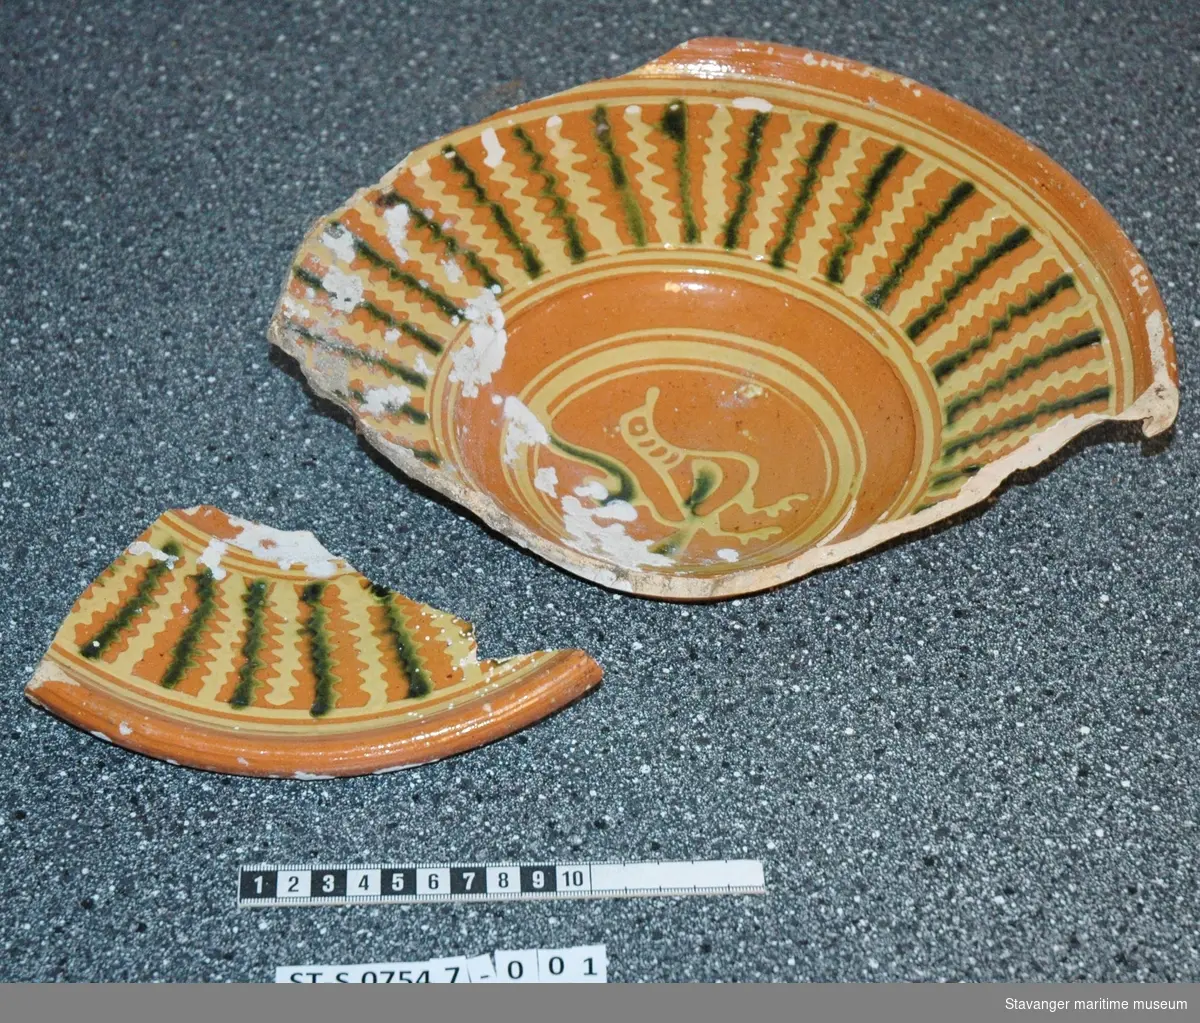 Størsteparten av et serveringsfat ble funnet, som tolkes som Weserkeramikk, altså fra nord-Tyskland, fra 1590-1620-tallet. Det snirklete mønsteret og fargen gjør at dette tolkes som Weserkeramikk. Denne typen keramikk anses som vanlig eksportvare fra tidsperioden.